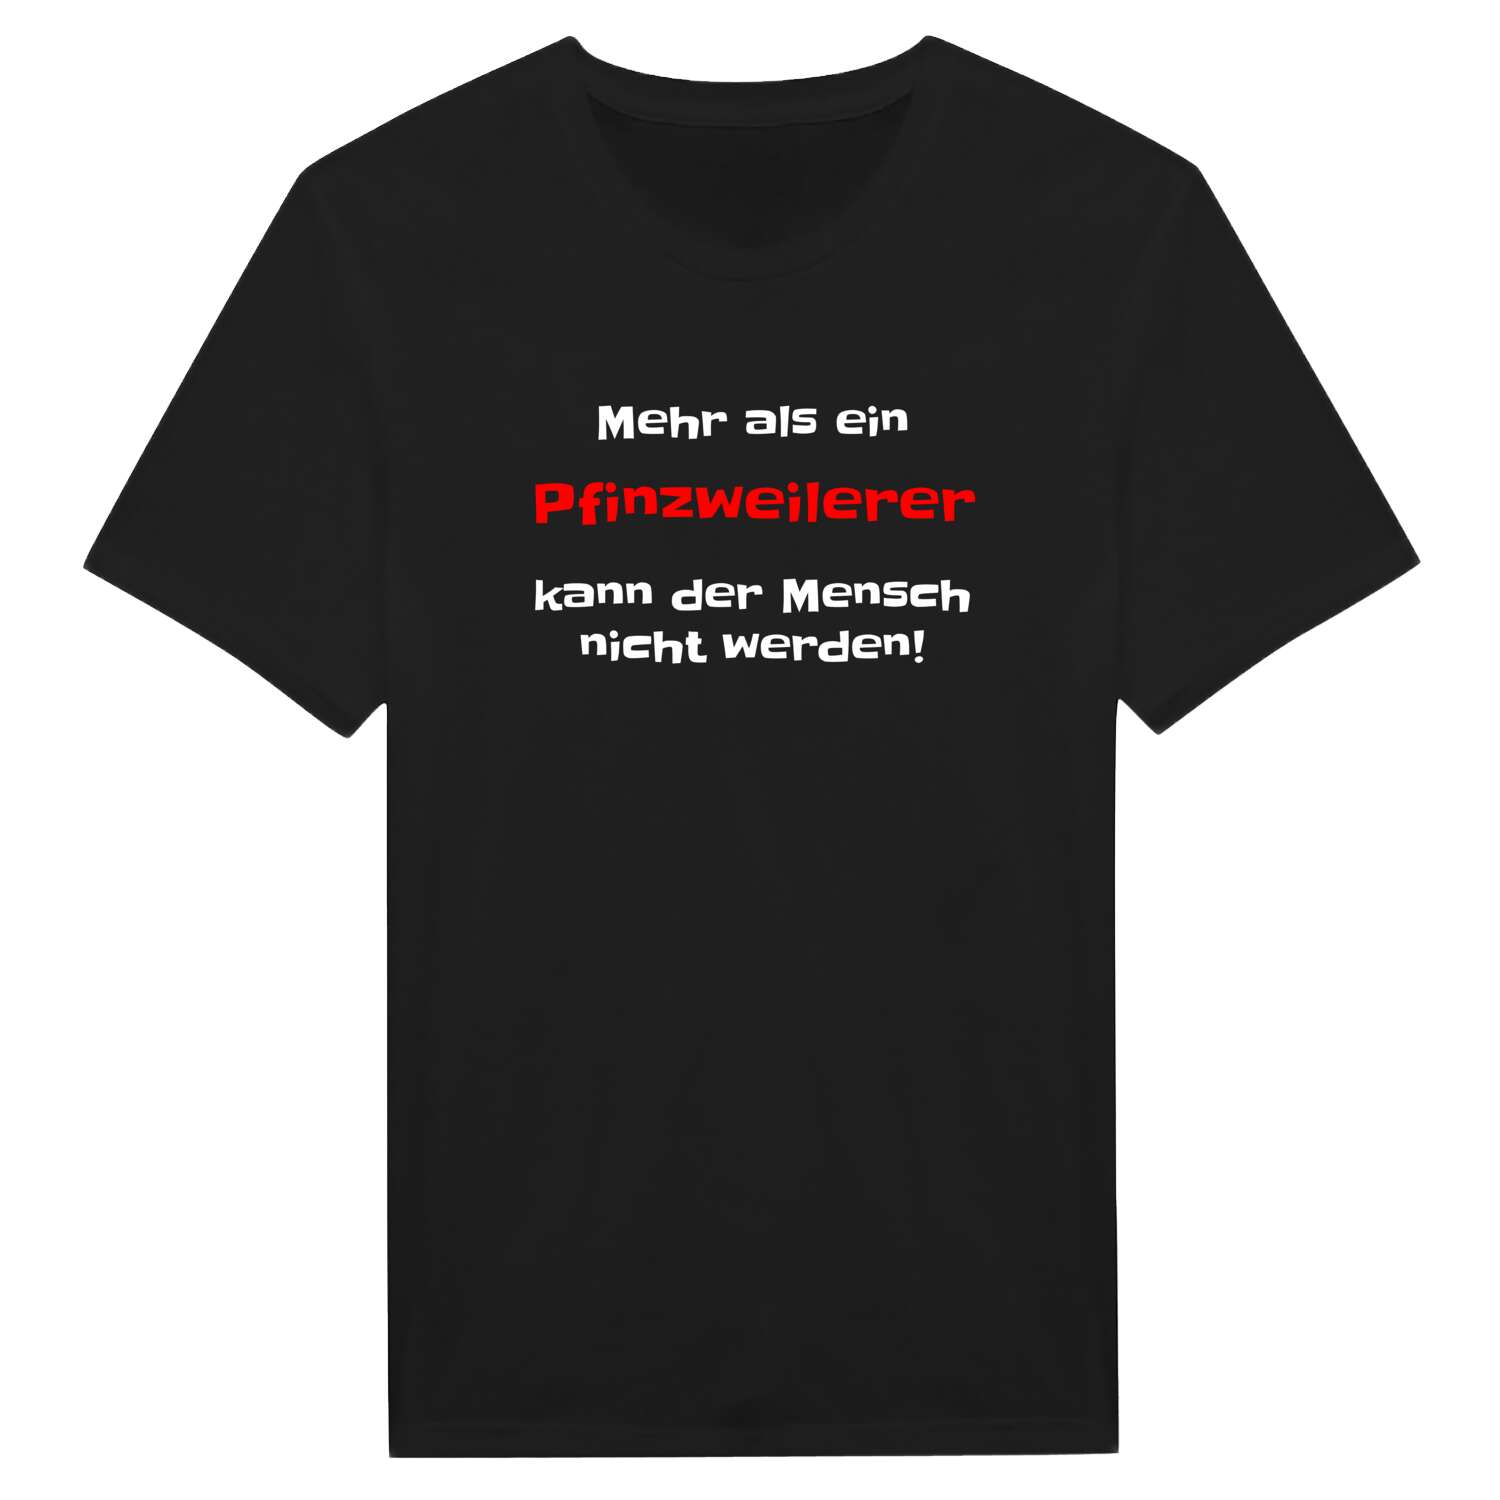 Pfinzweiler T-Shirt »Mehr als ein«